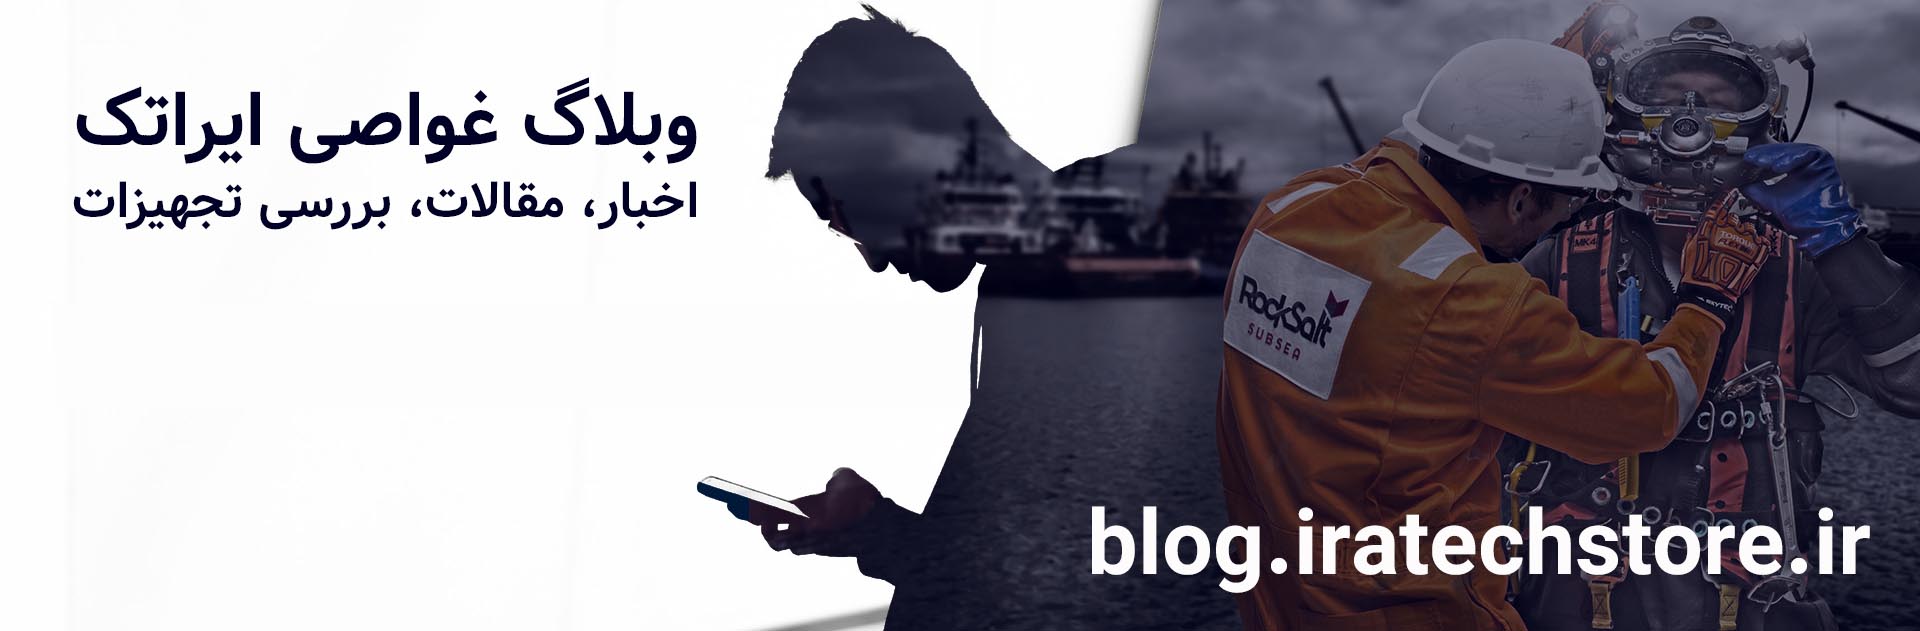 وبلاگ غواصی ایراتک